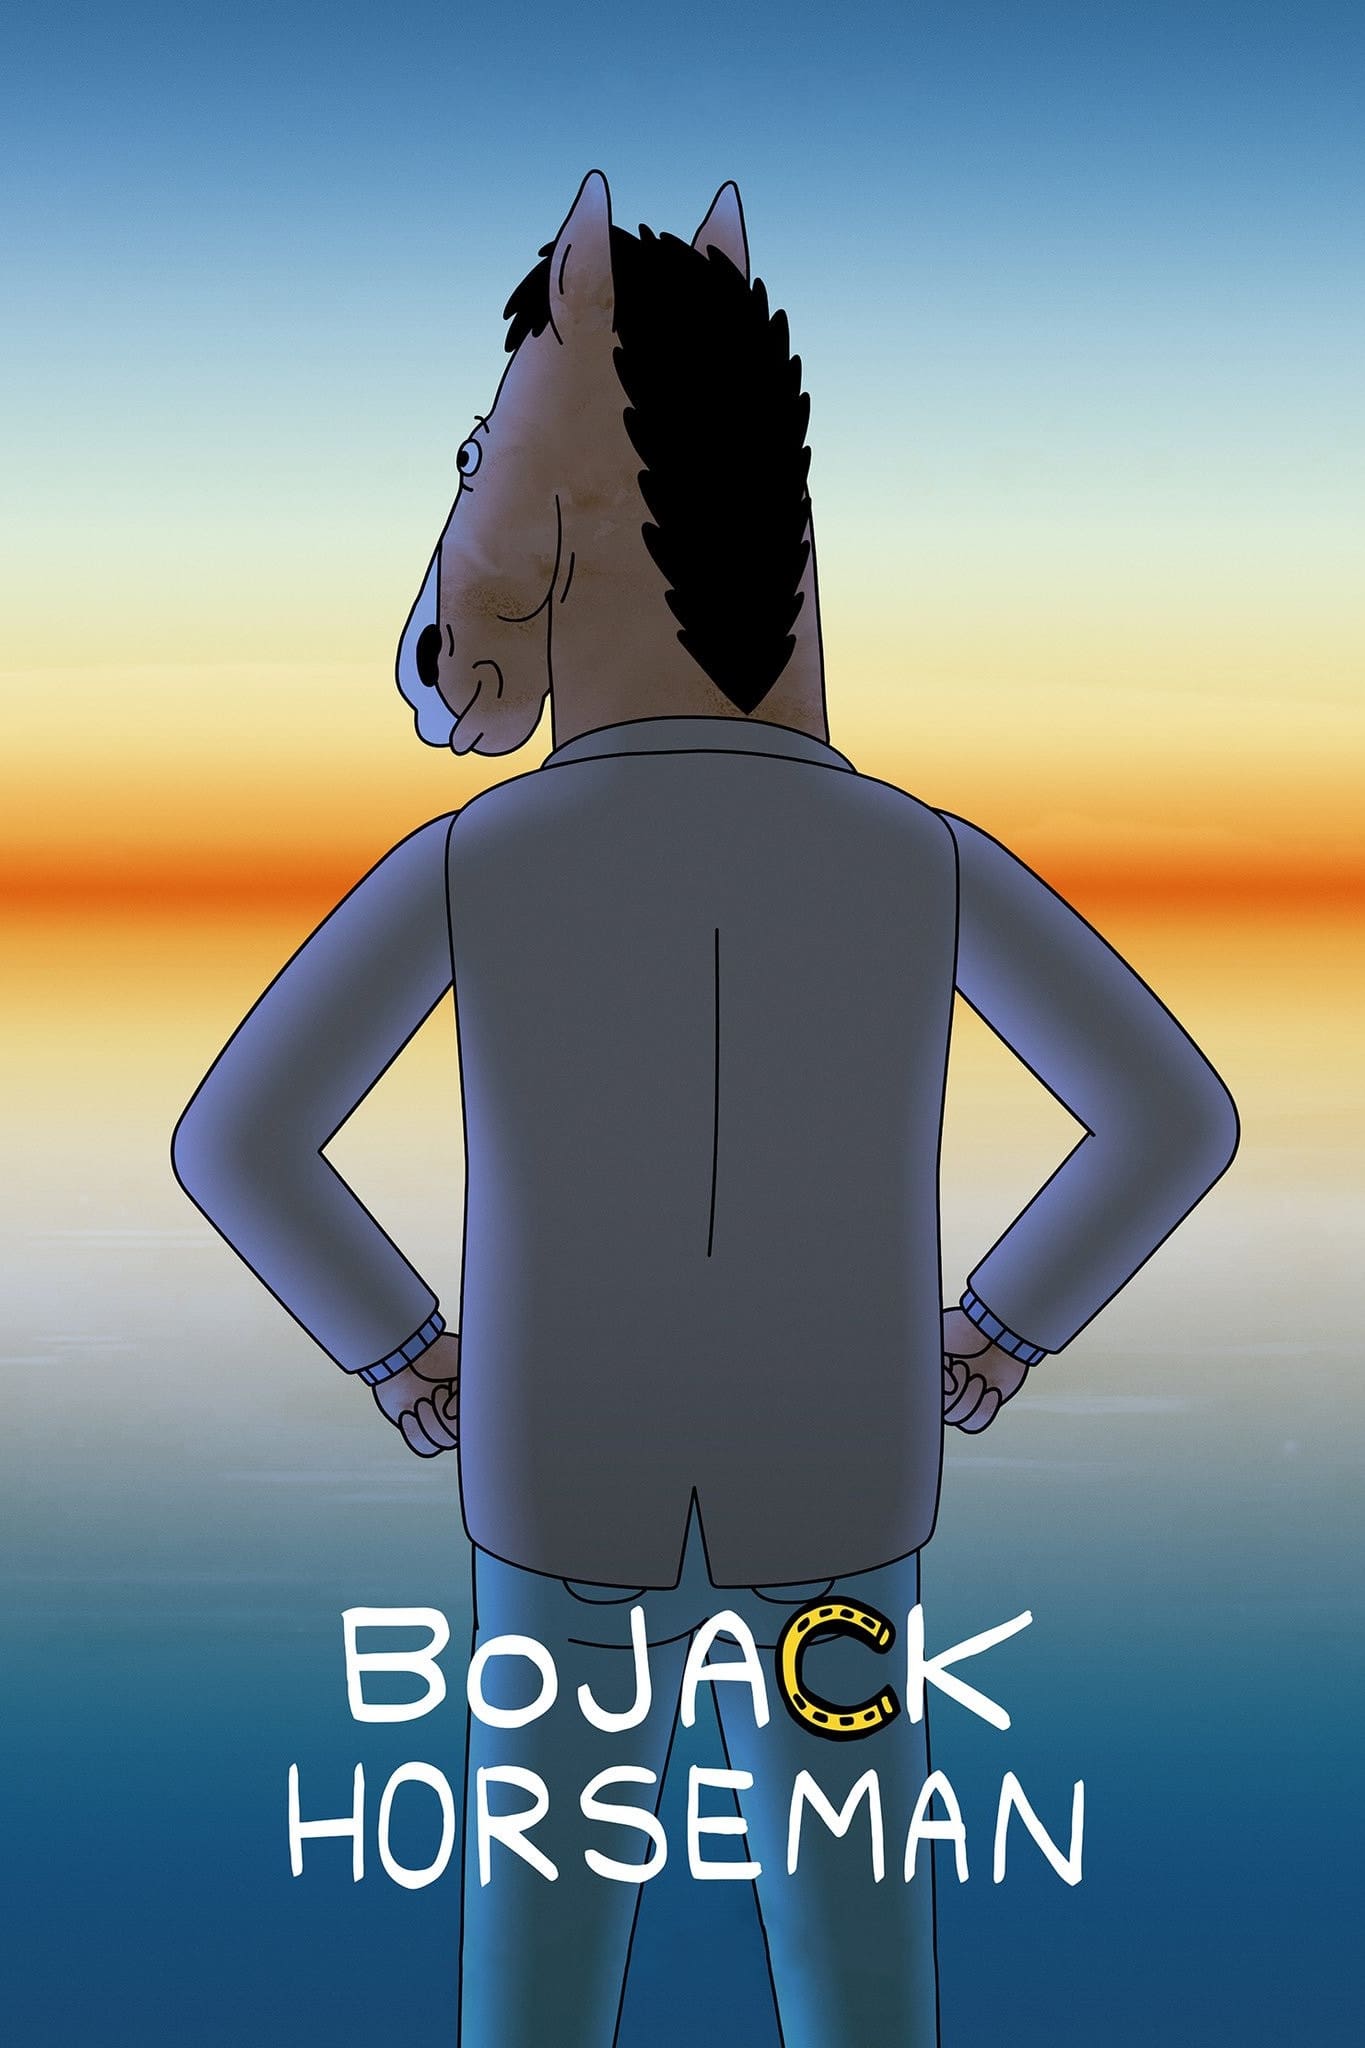 BoJack Horseman TV Shows About Drug Abuse